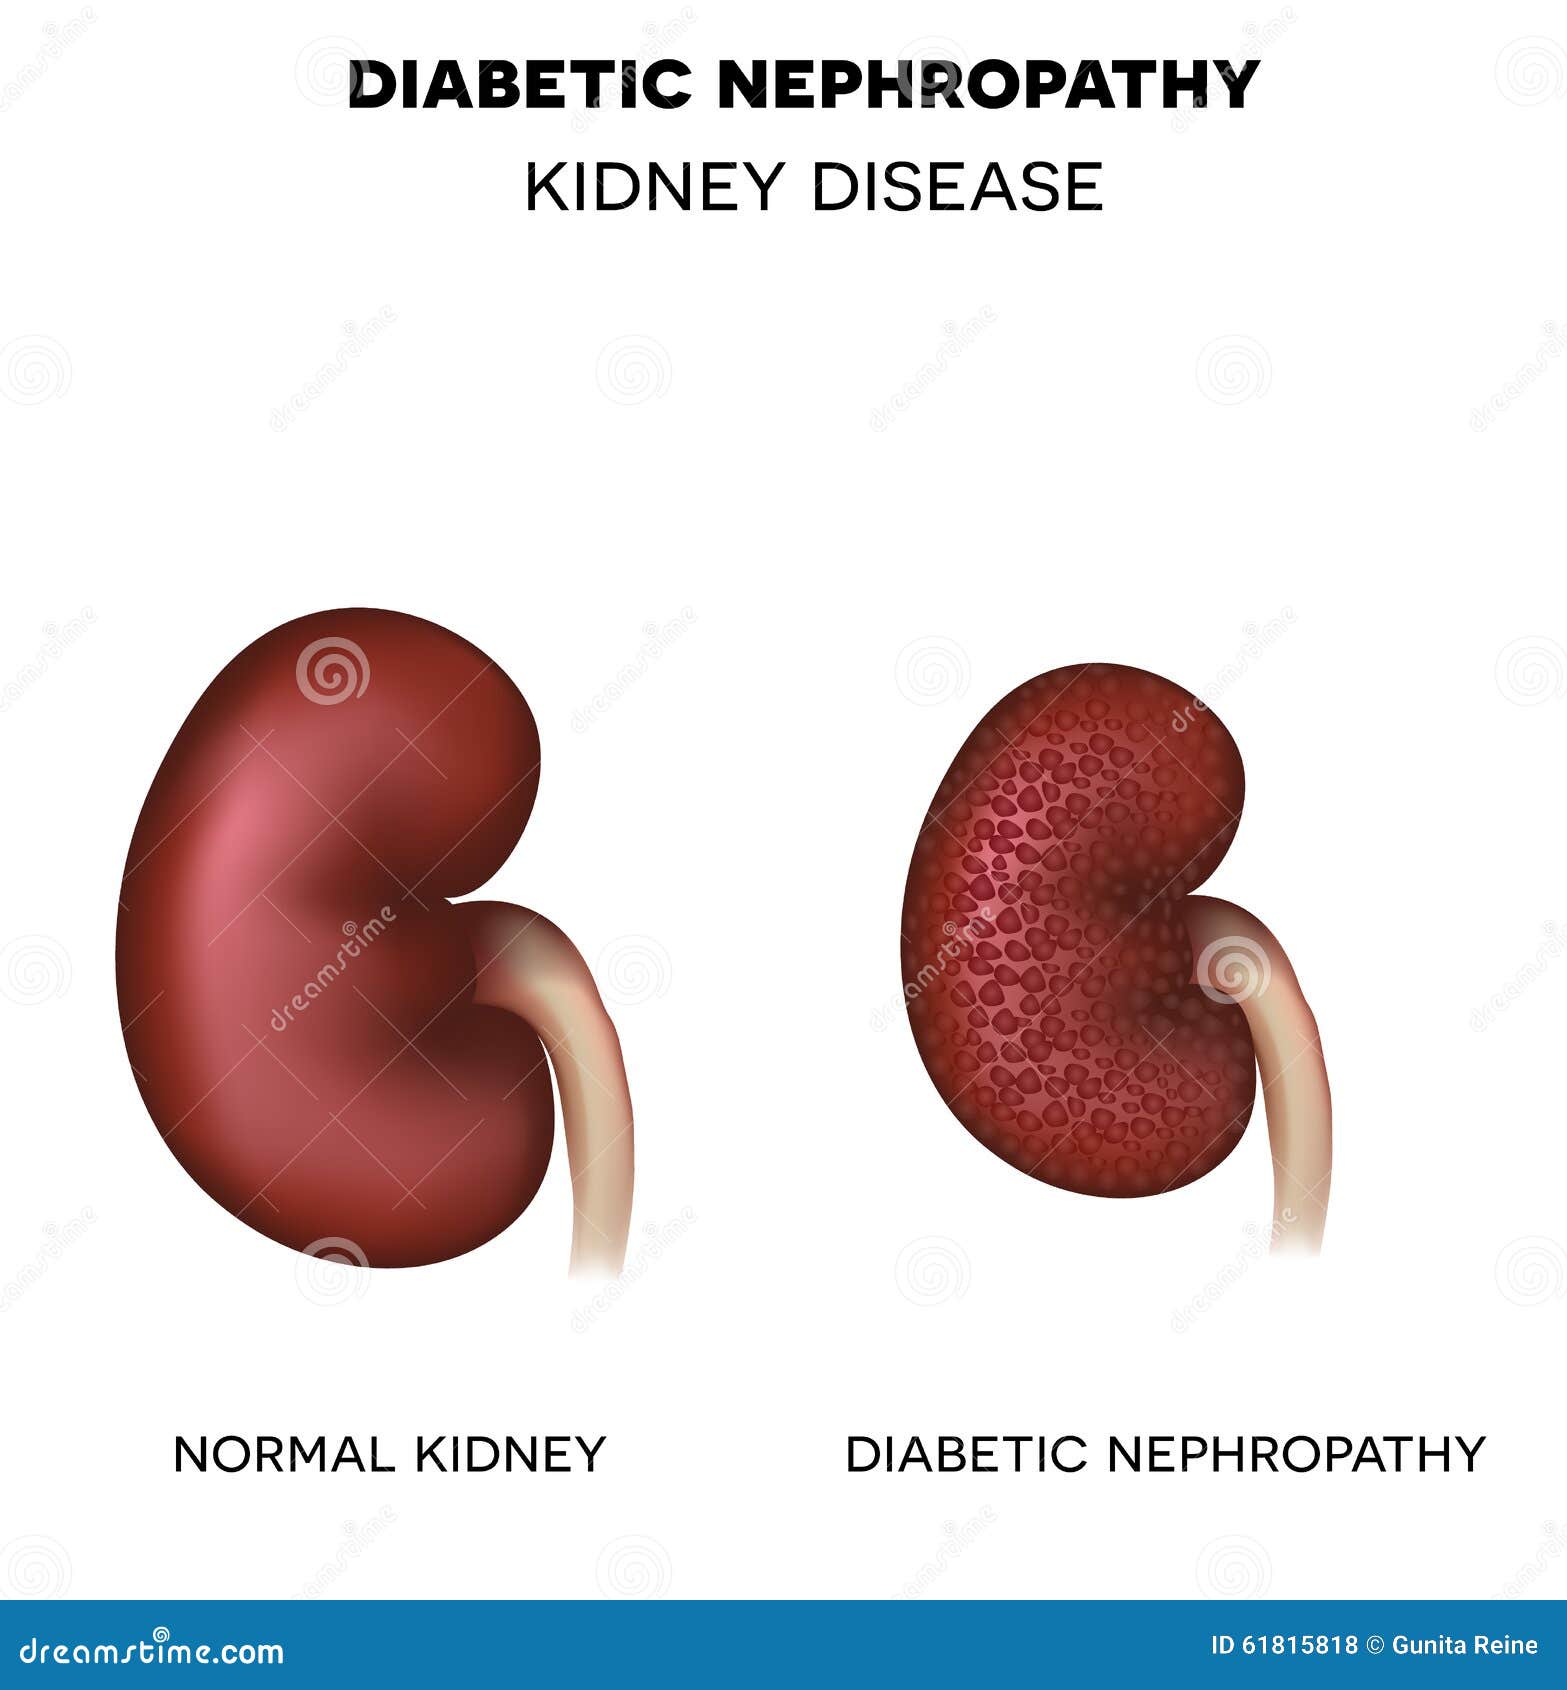 diabetic nephropathy, kidney disease